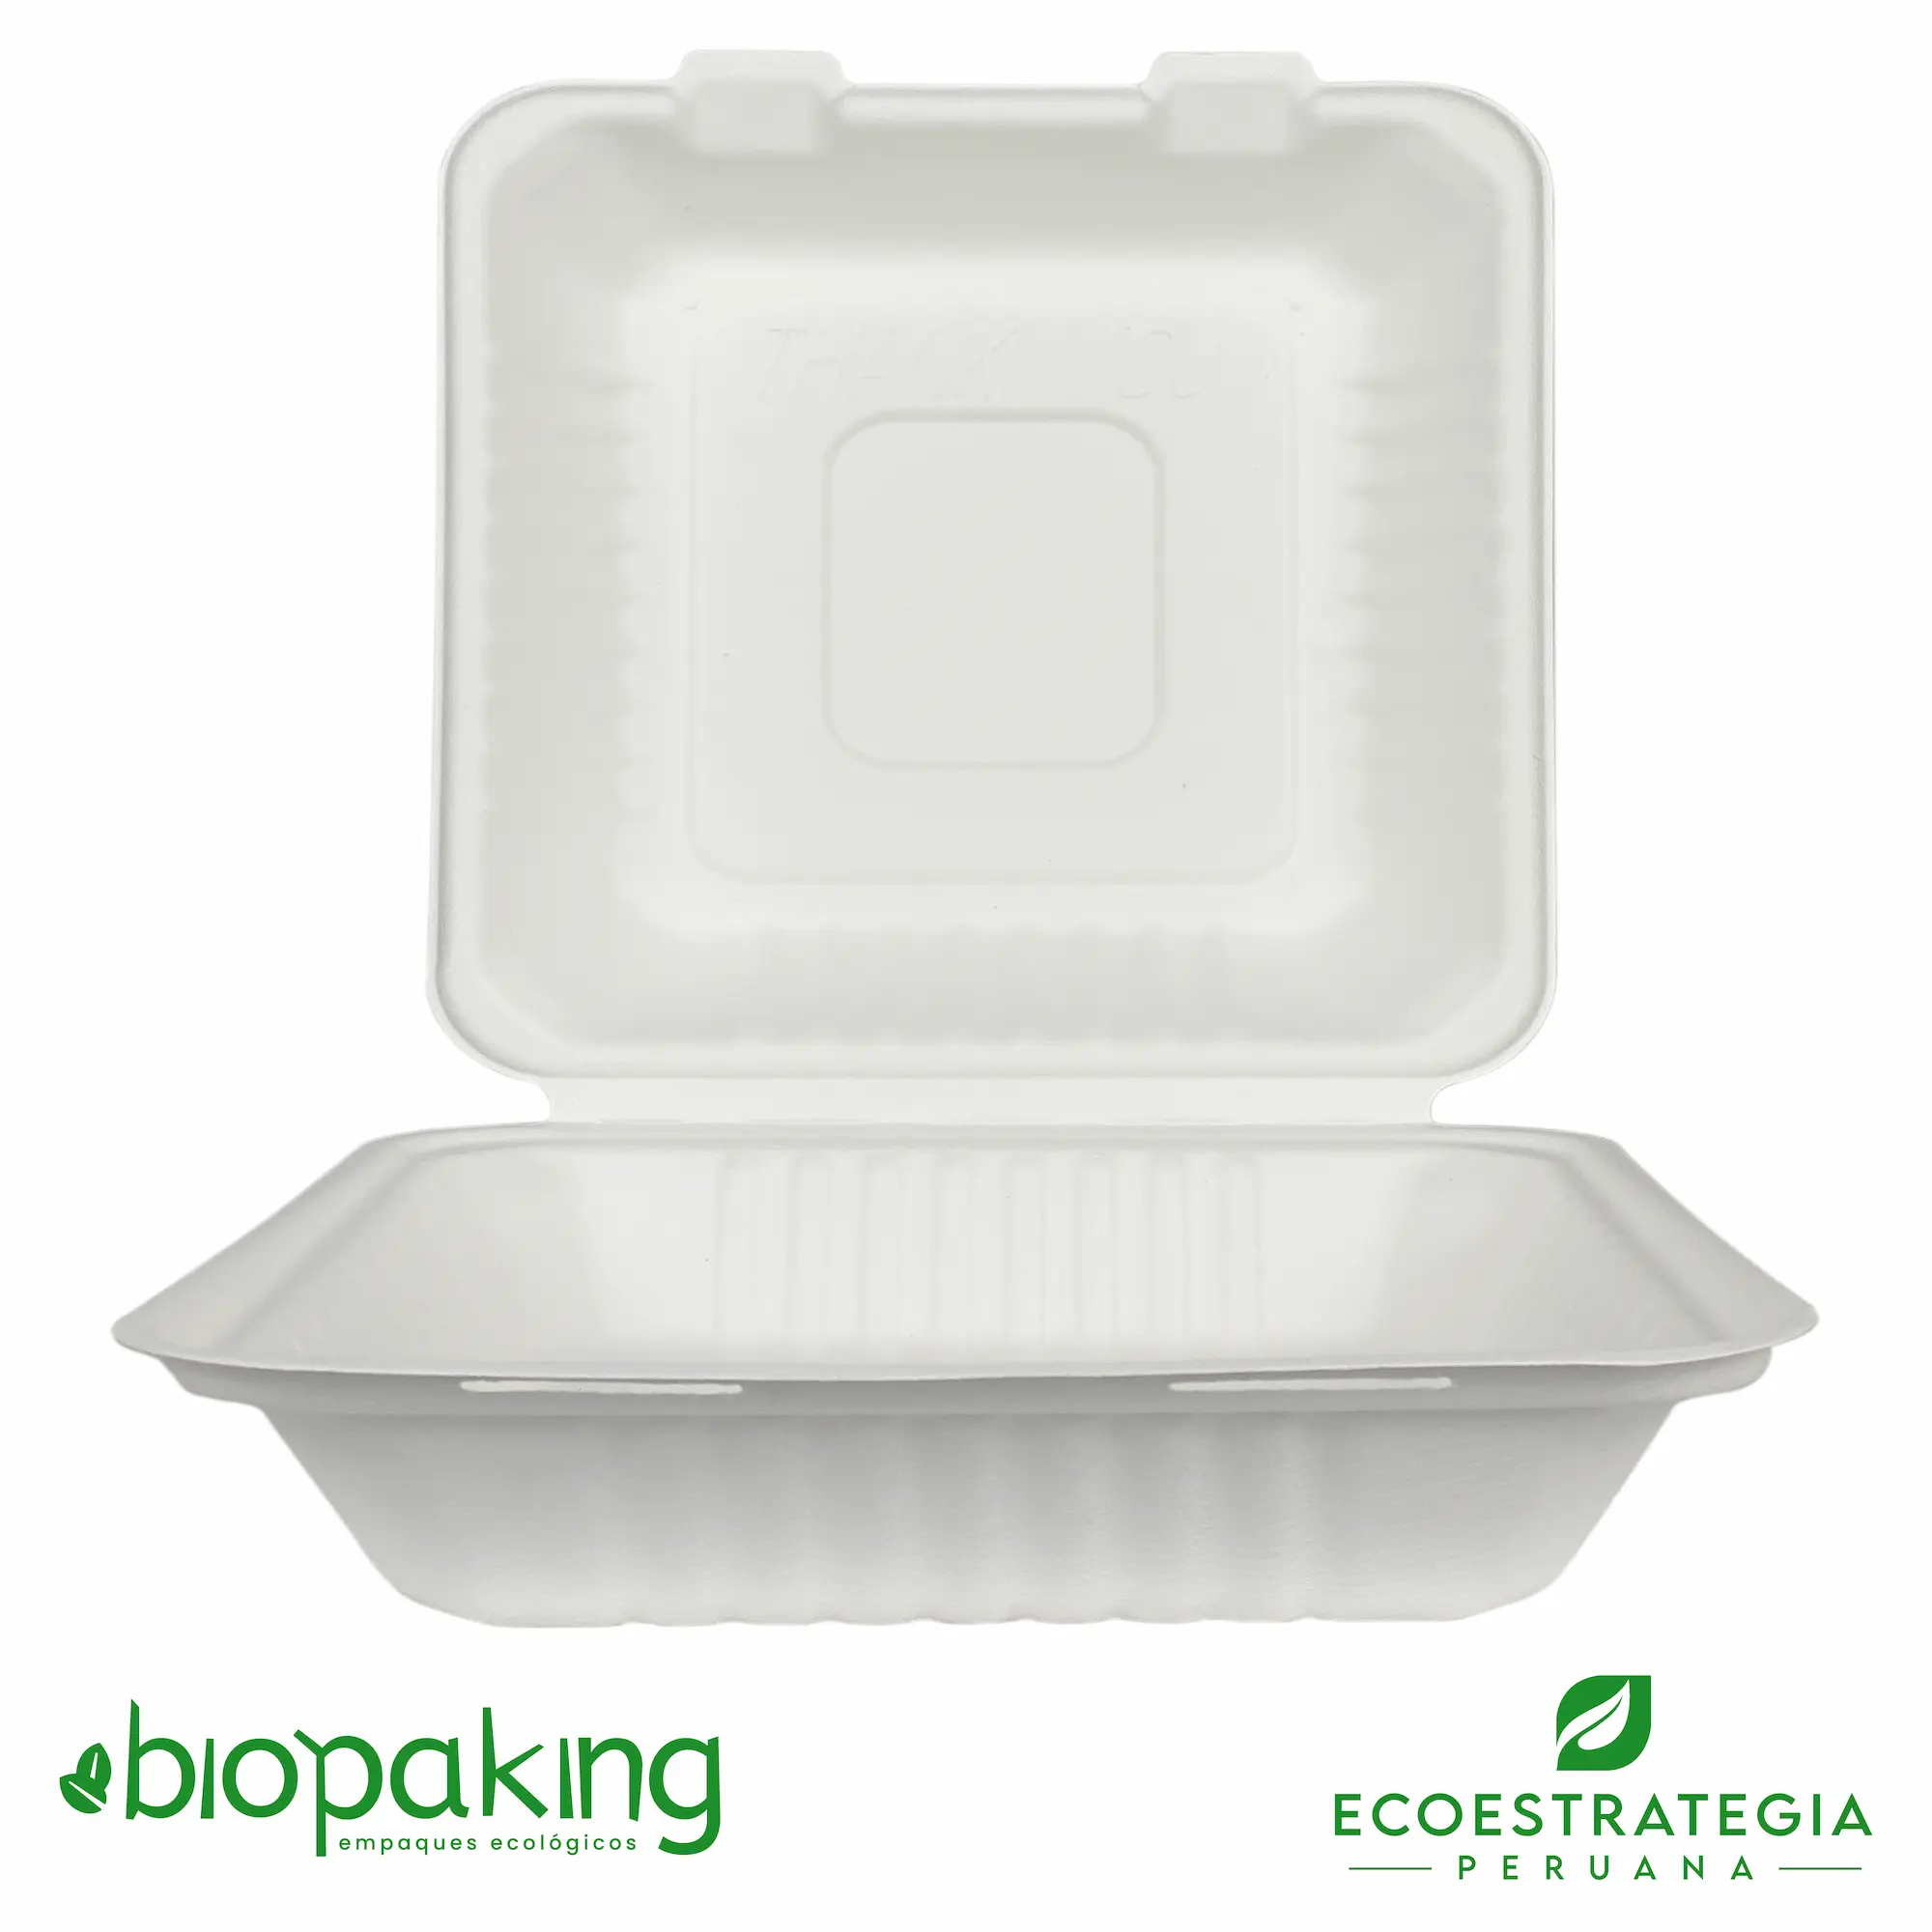 Este envase CT1 tiene una capacidad de 1500ml. Producto de materiales biodegradables, hecho a base de fibra de caña de azúcar, empaques y tapers para comidas